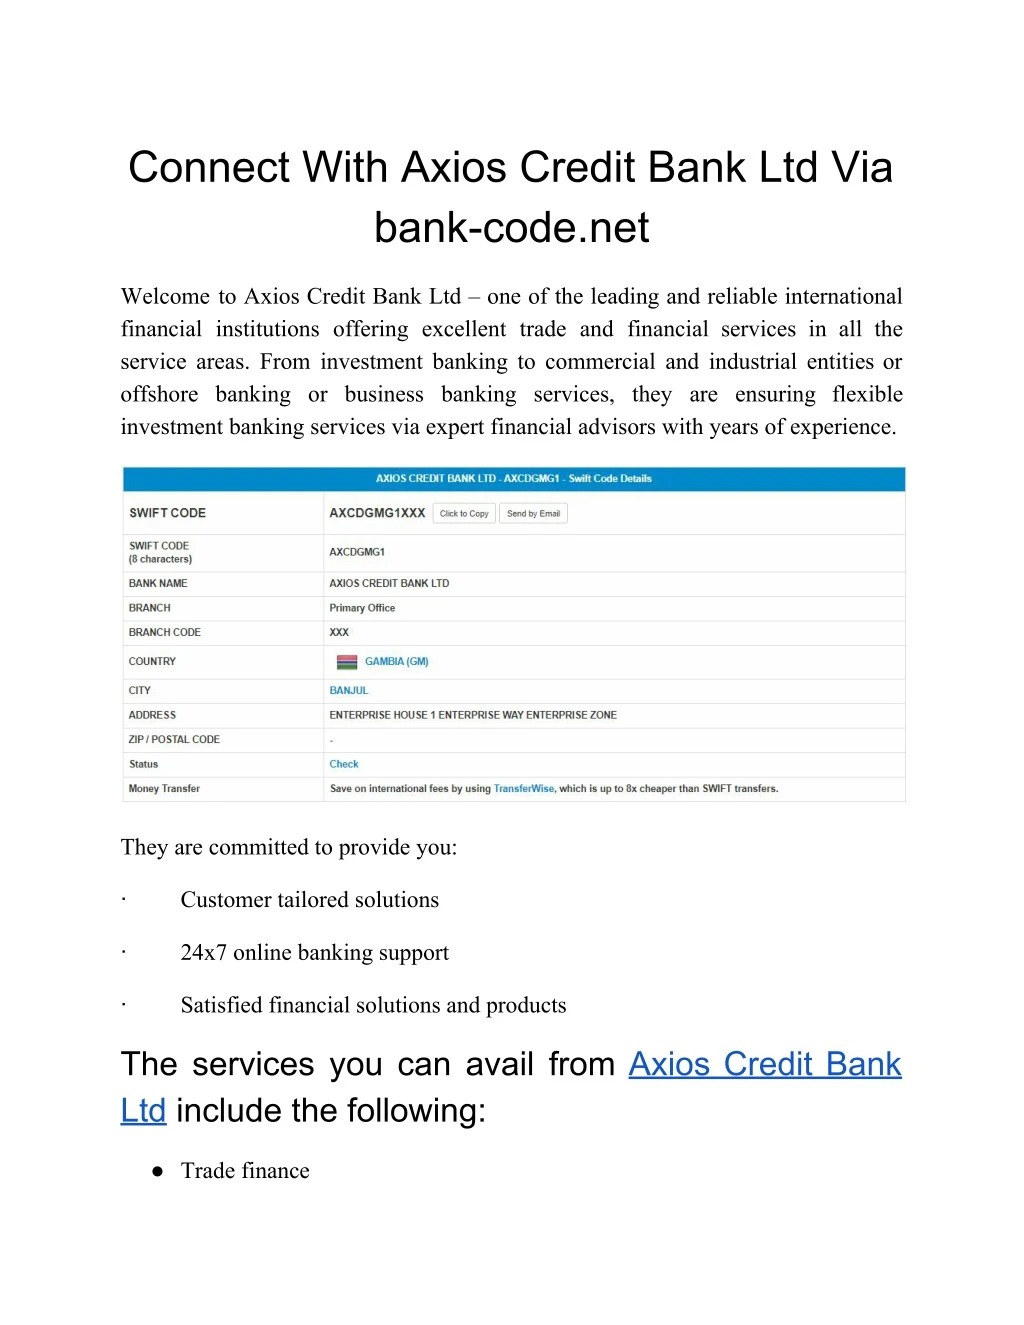 connect with axios credit bank ltd via bank code